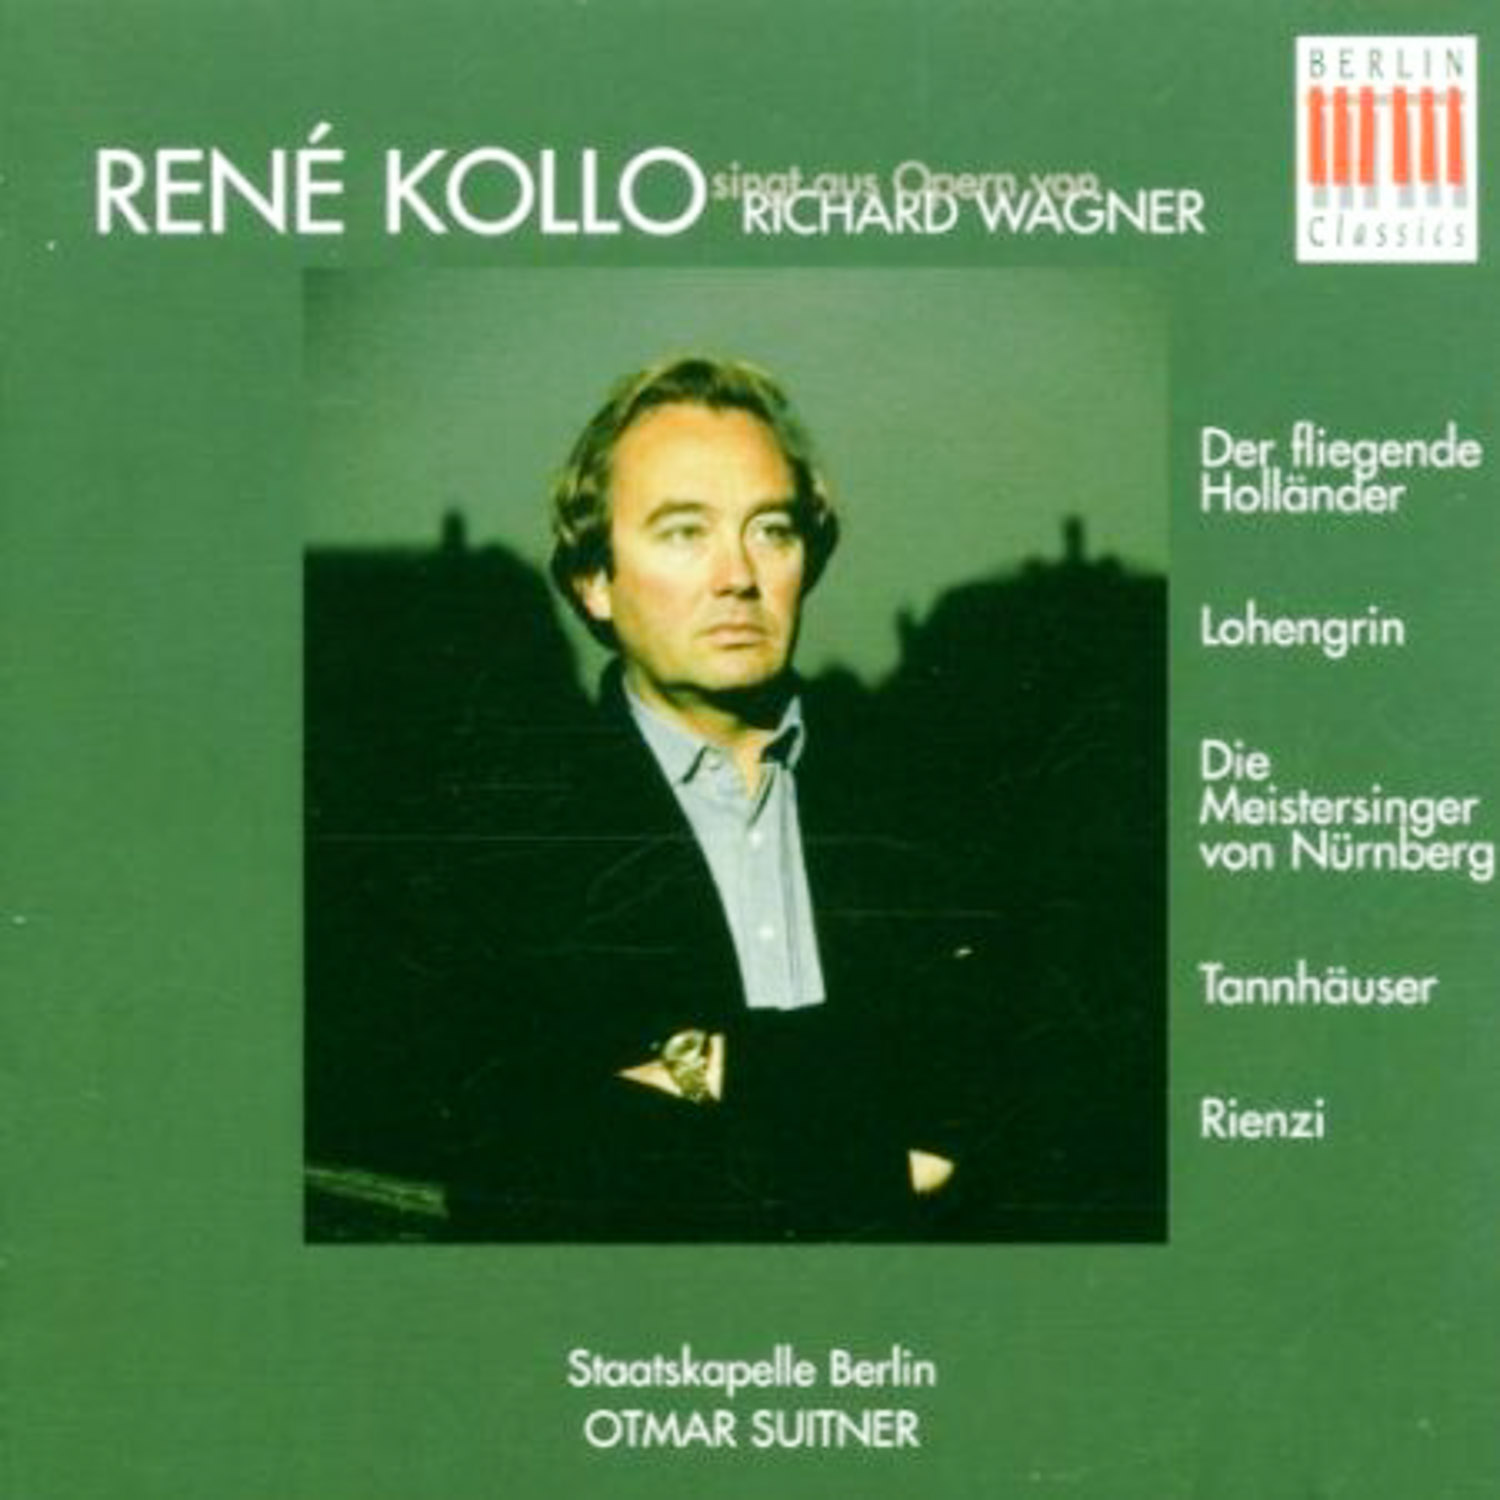 René Kollo; Otmar Suitner, Staatskapelle Berlin  René Kollo singt aus Opern von Richard Wagner  *Audio-CD*. 